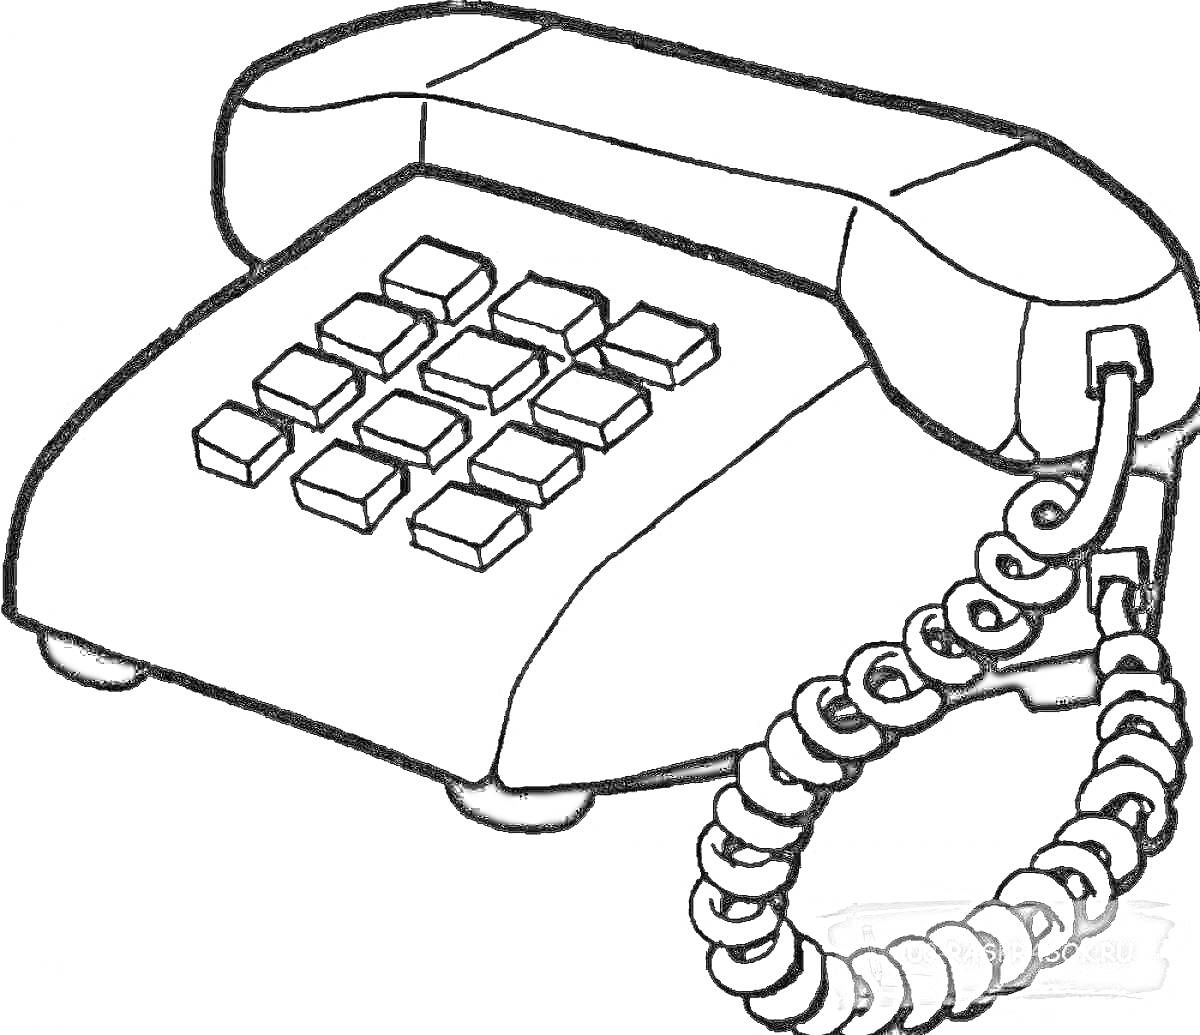 Раскраска Стационарный телефон с кнопками и витым шнуром.